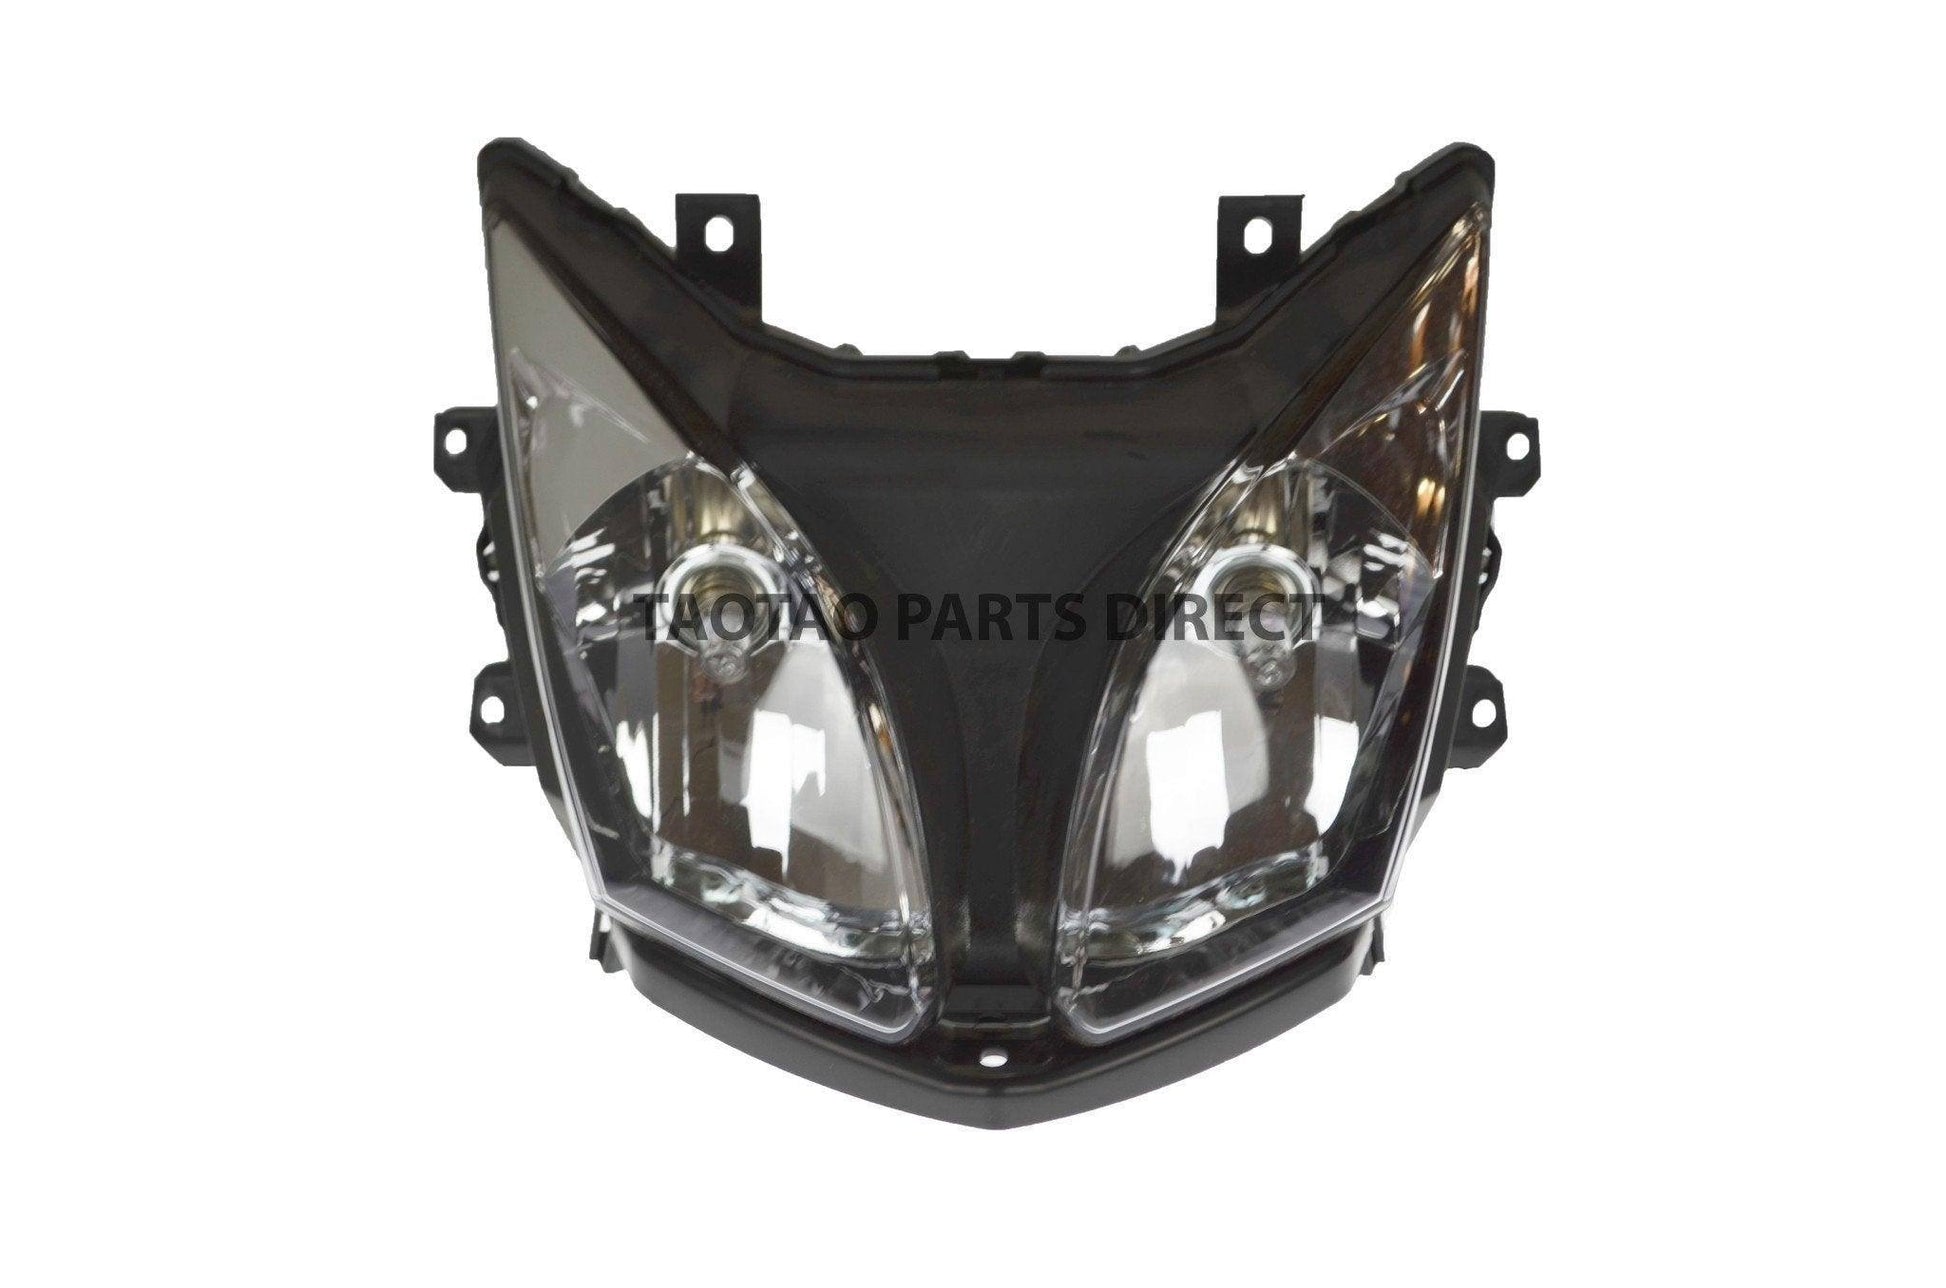 ATA300H1 Headlight - TaoTao Parts Direct